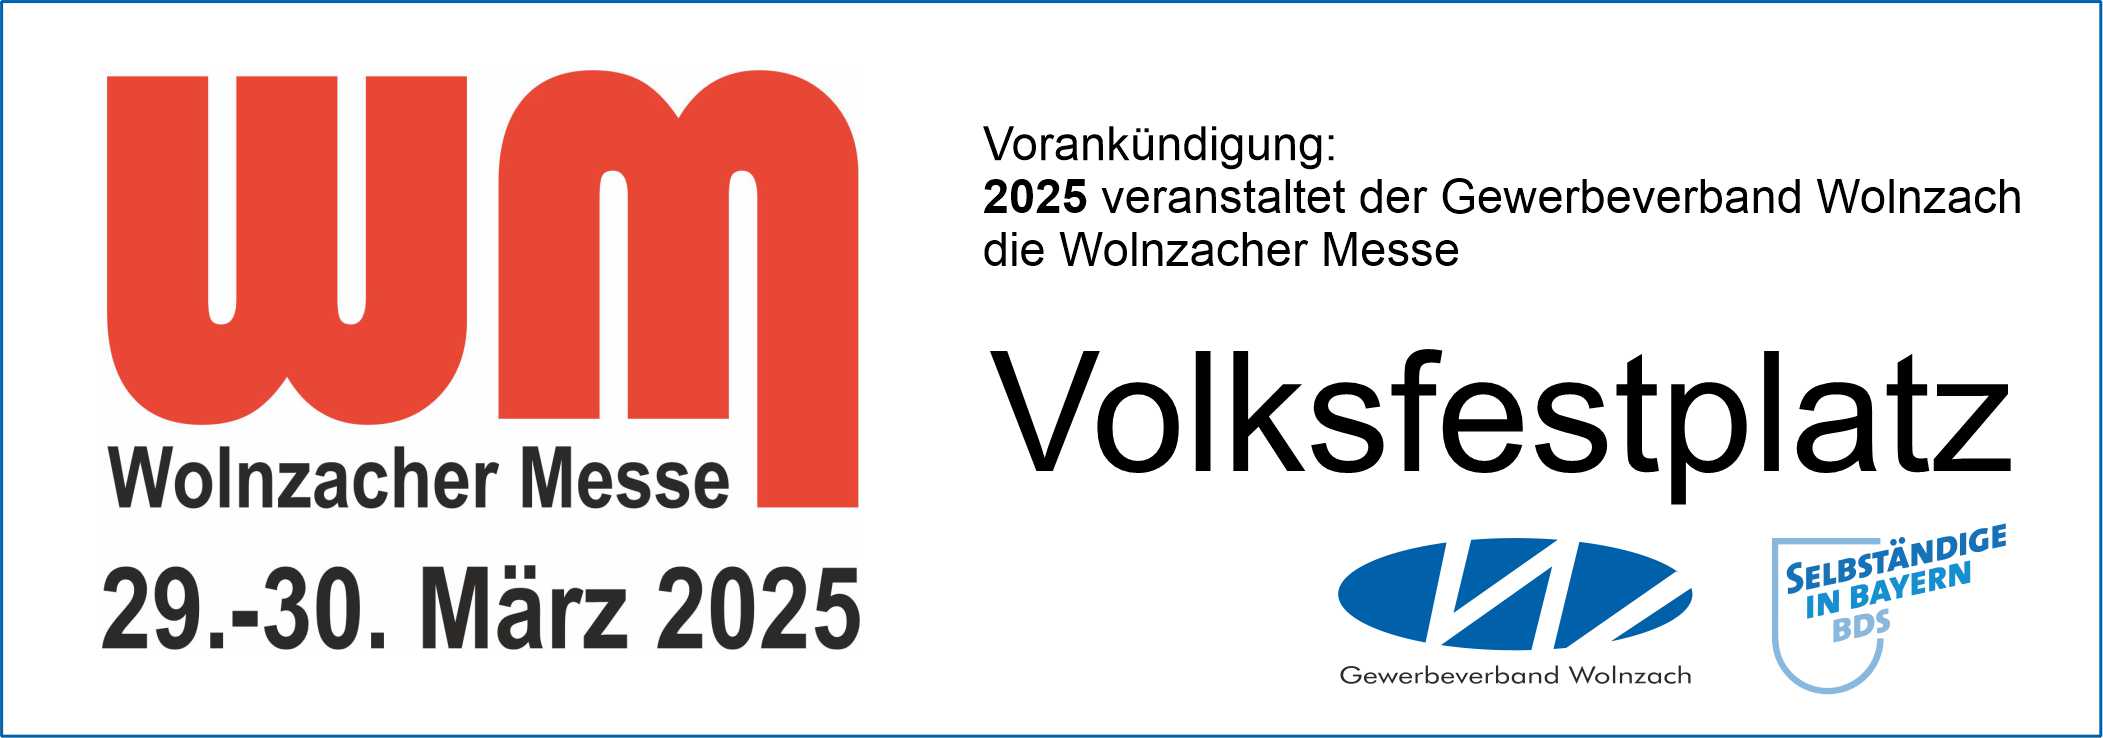 Wolnzacher Messe 2025 Volksfestplatz Wolnzach